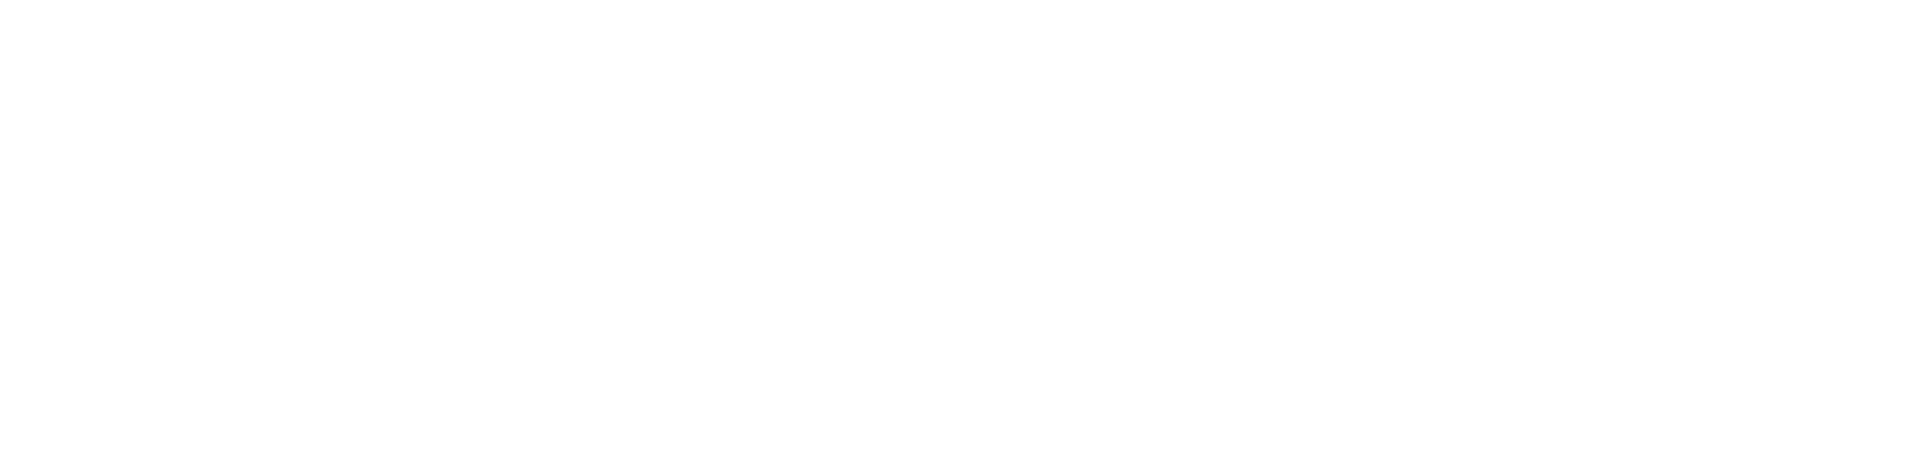 DigitalTria